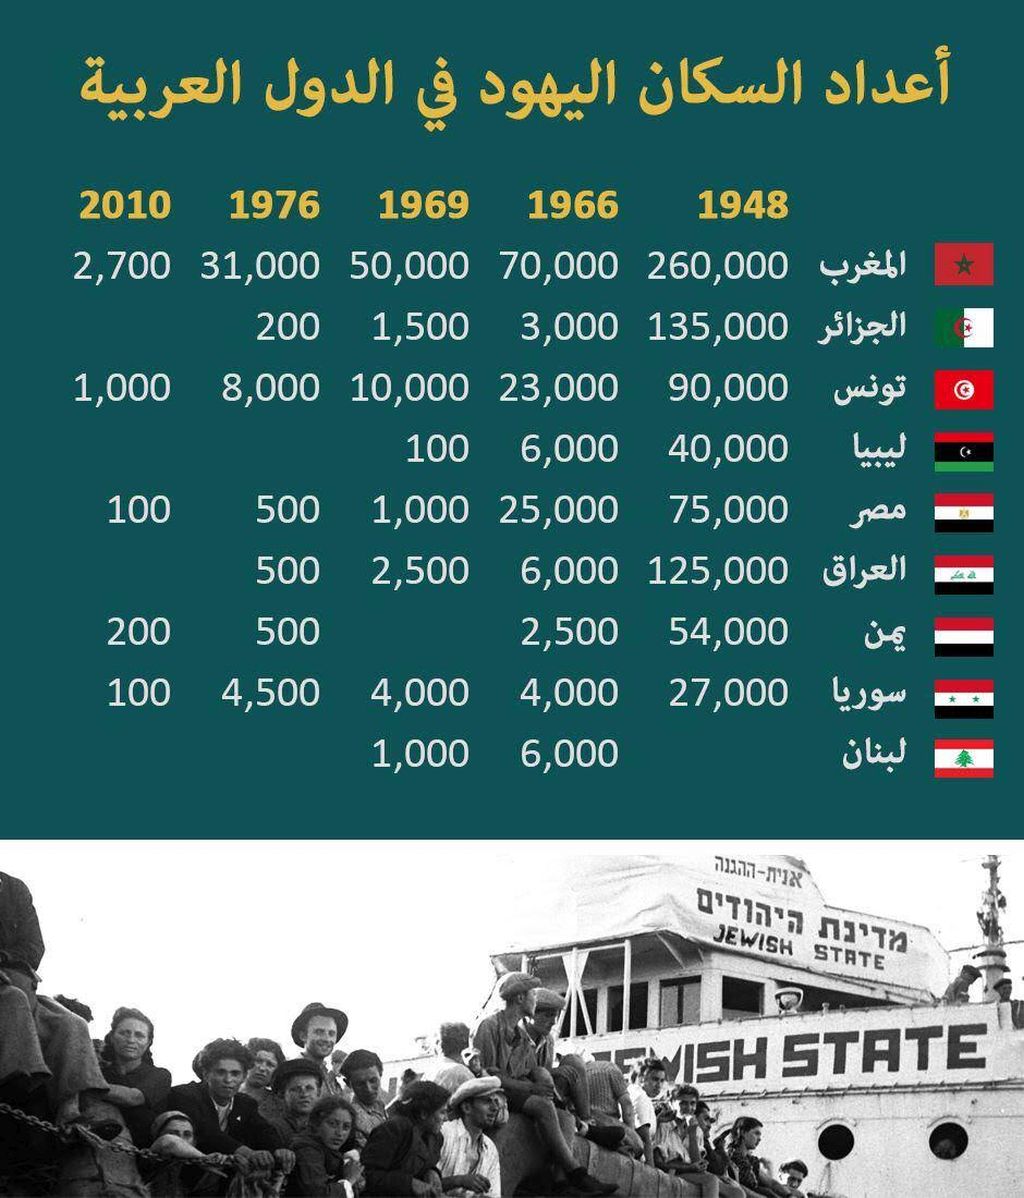 Un post señalando la disminución de la cantidad de judíos en los países árabes